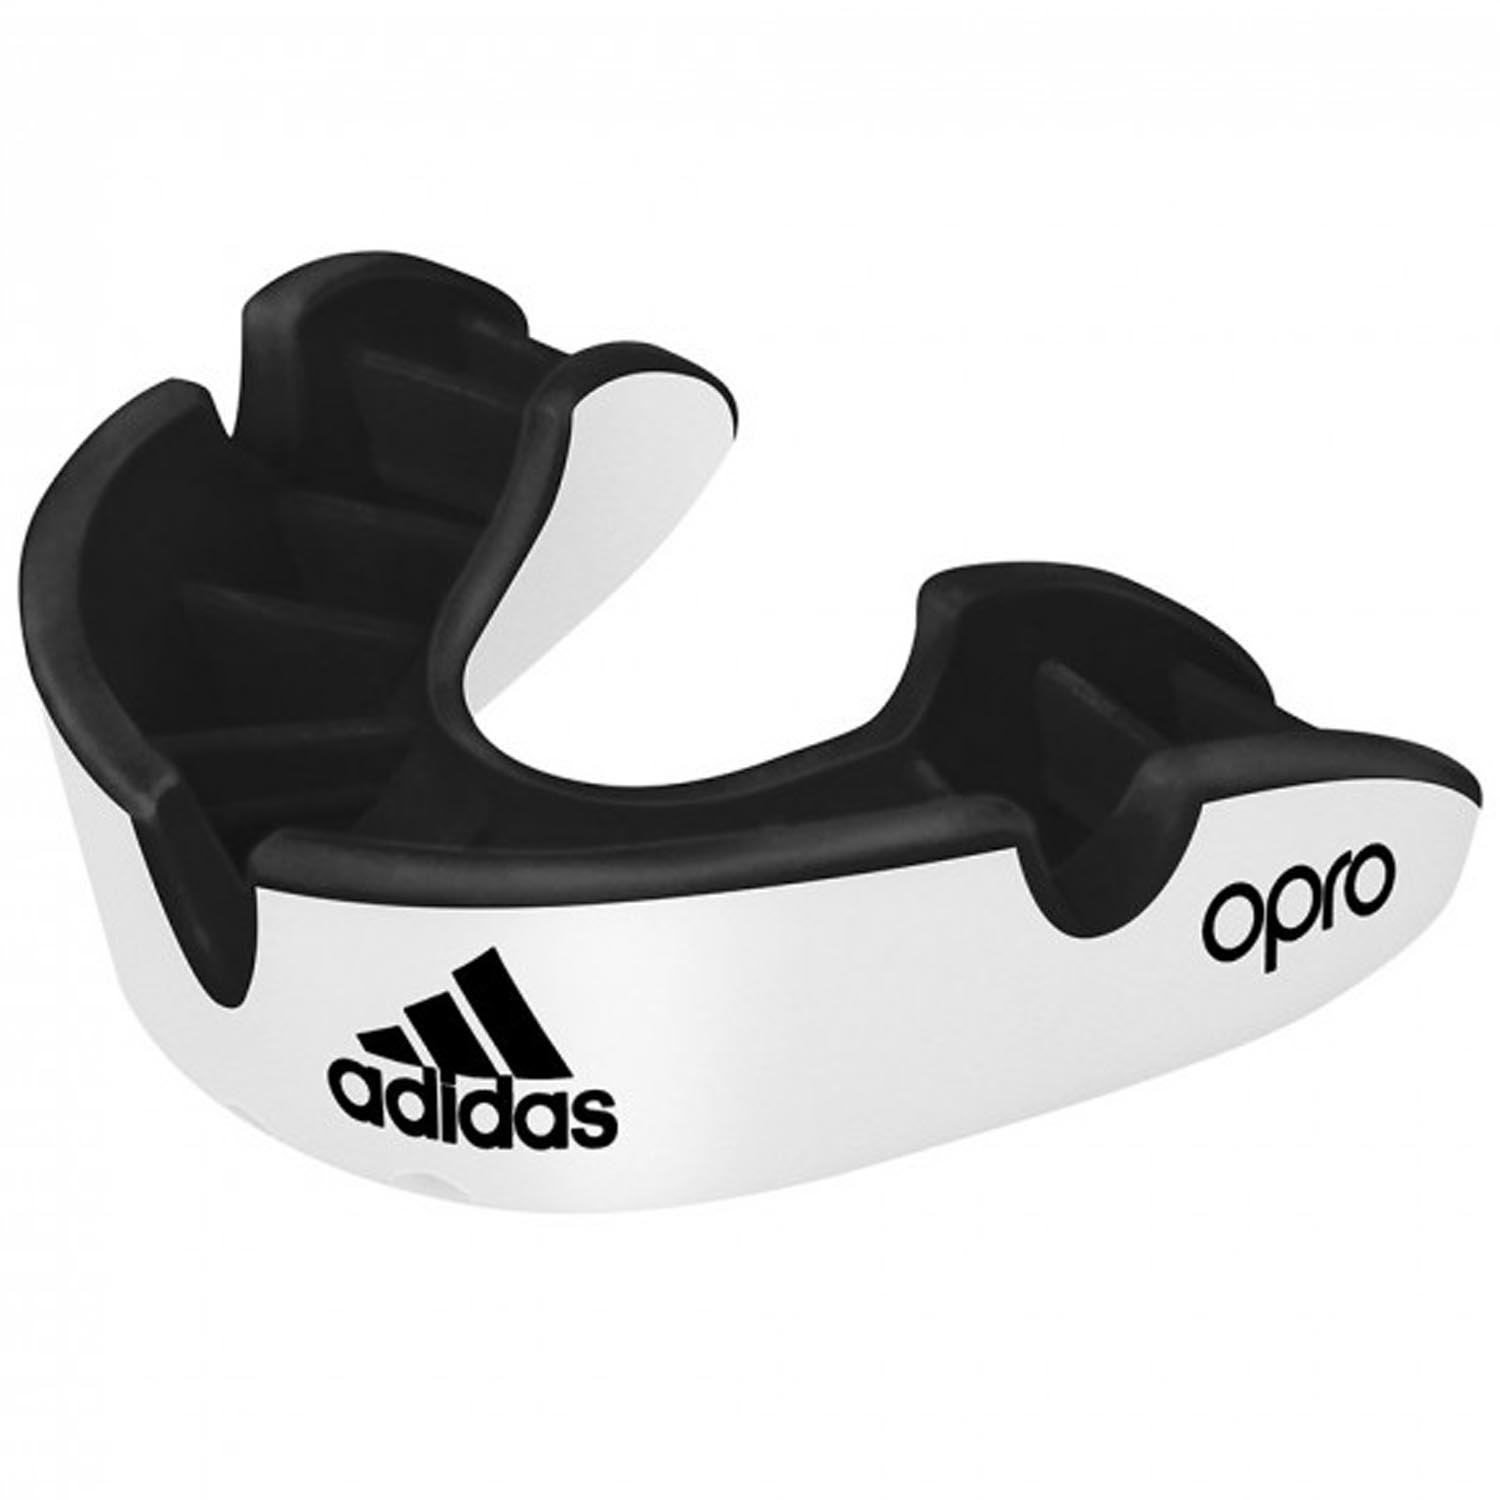 adidas Mundschutz, Opro Silver ADIBP32, weiß